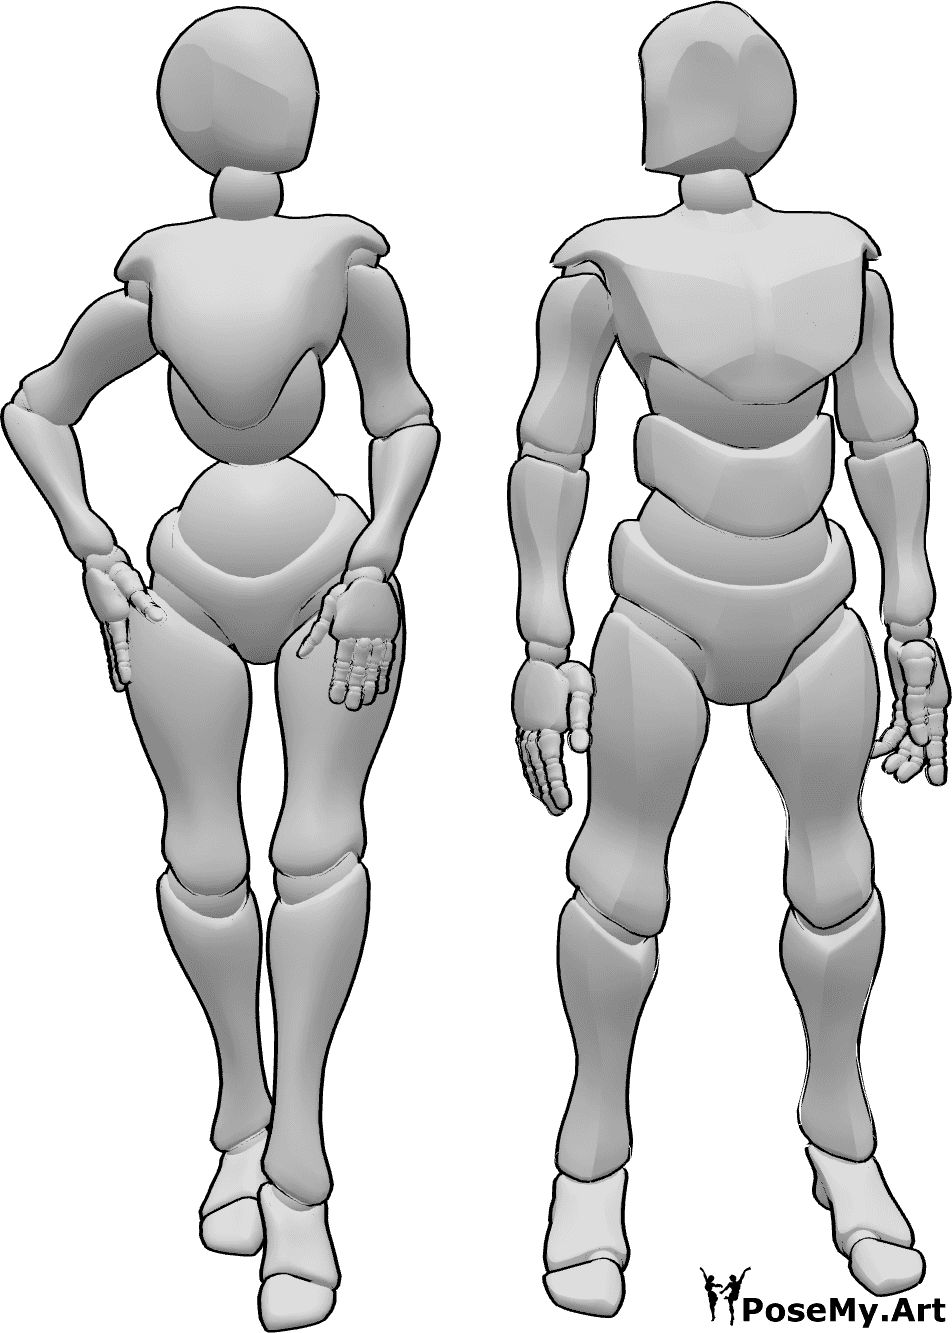 Referência de poses- Pose de pé de homem feminino - A mulher e o homem estão ao lado um do outro em pose